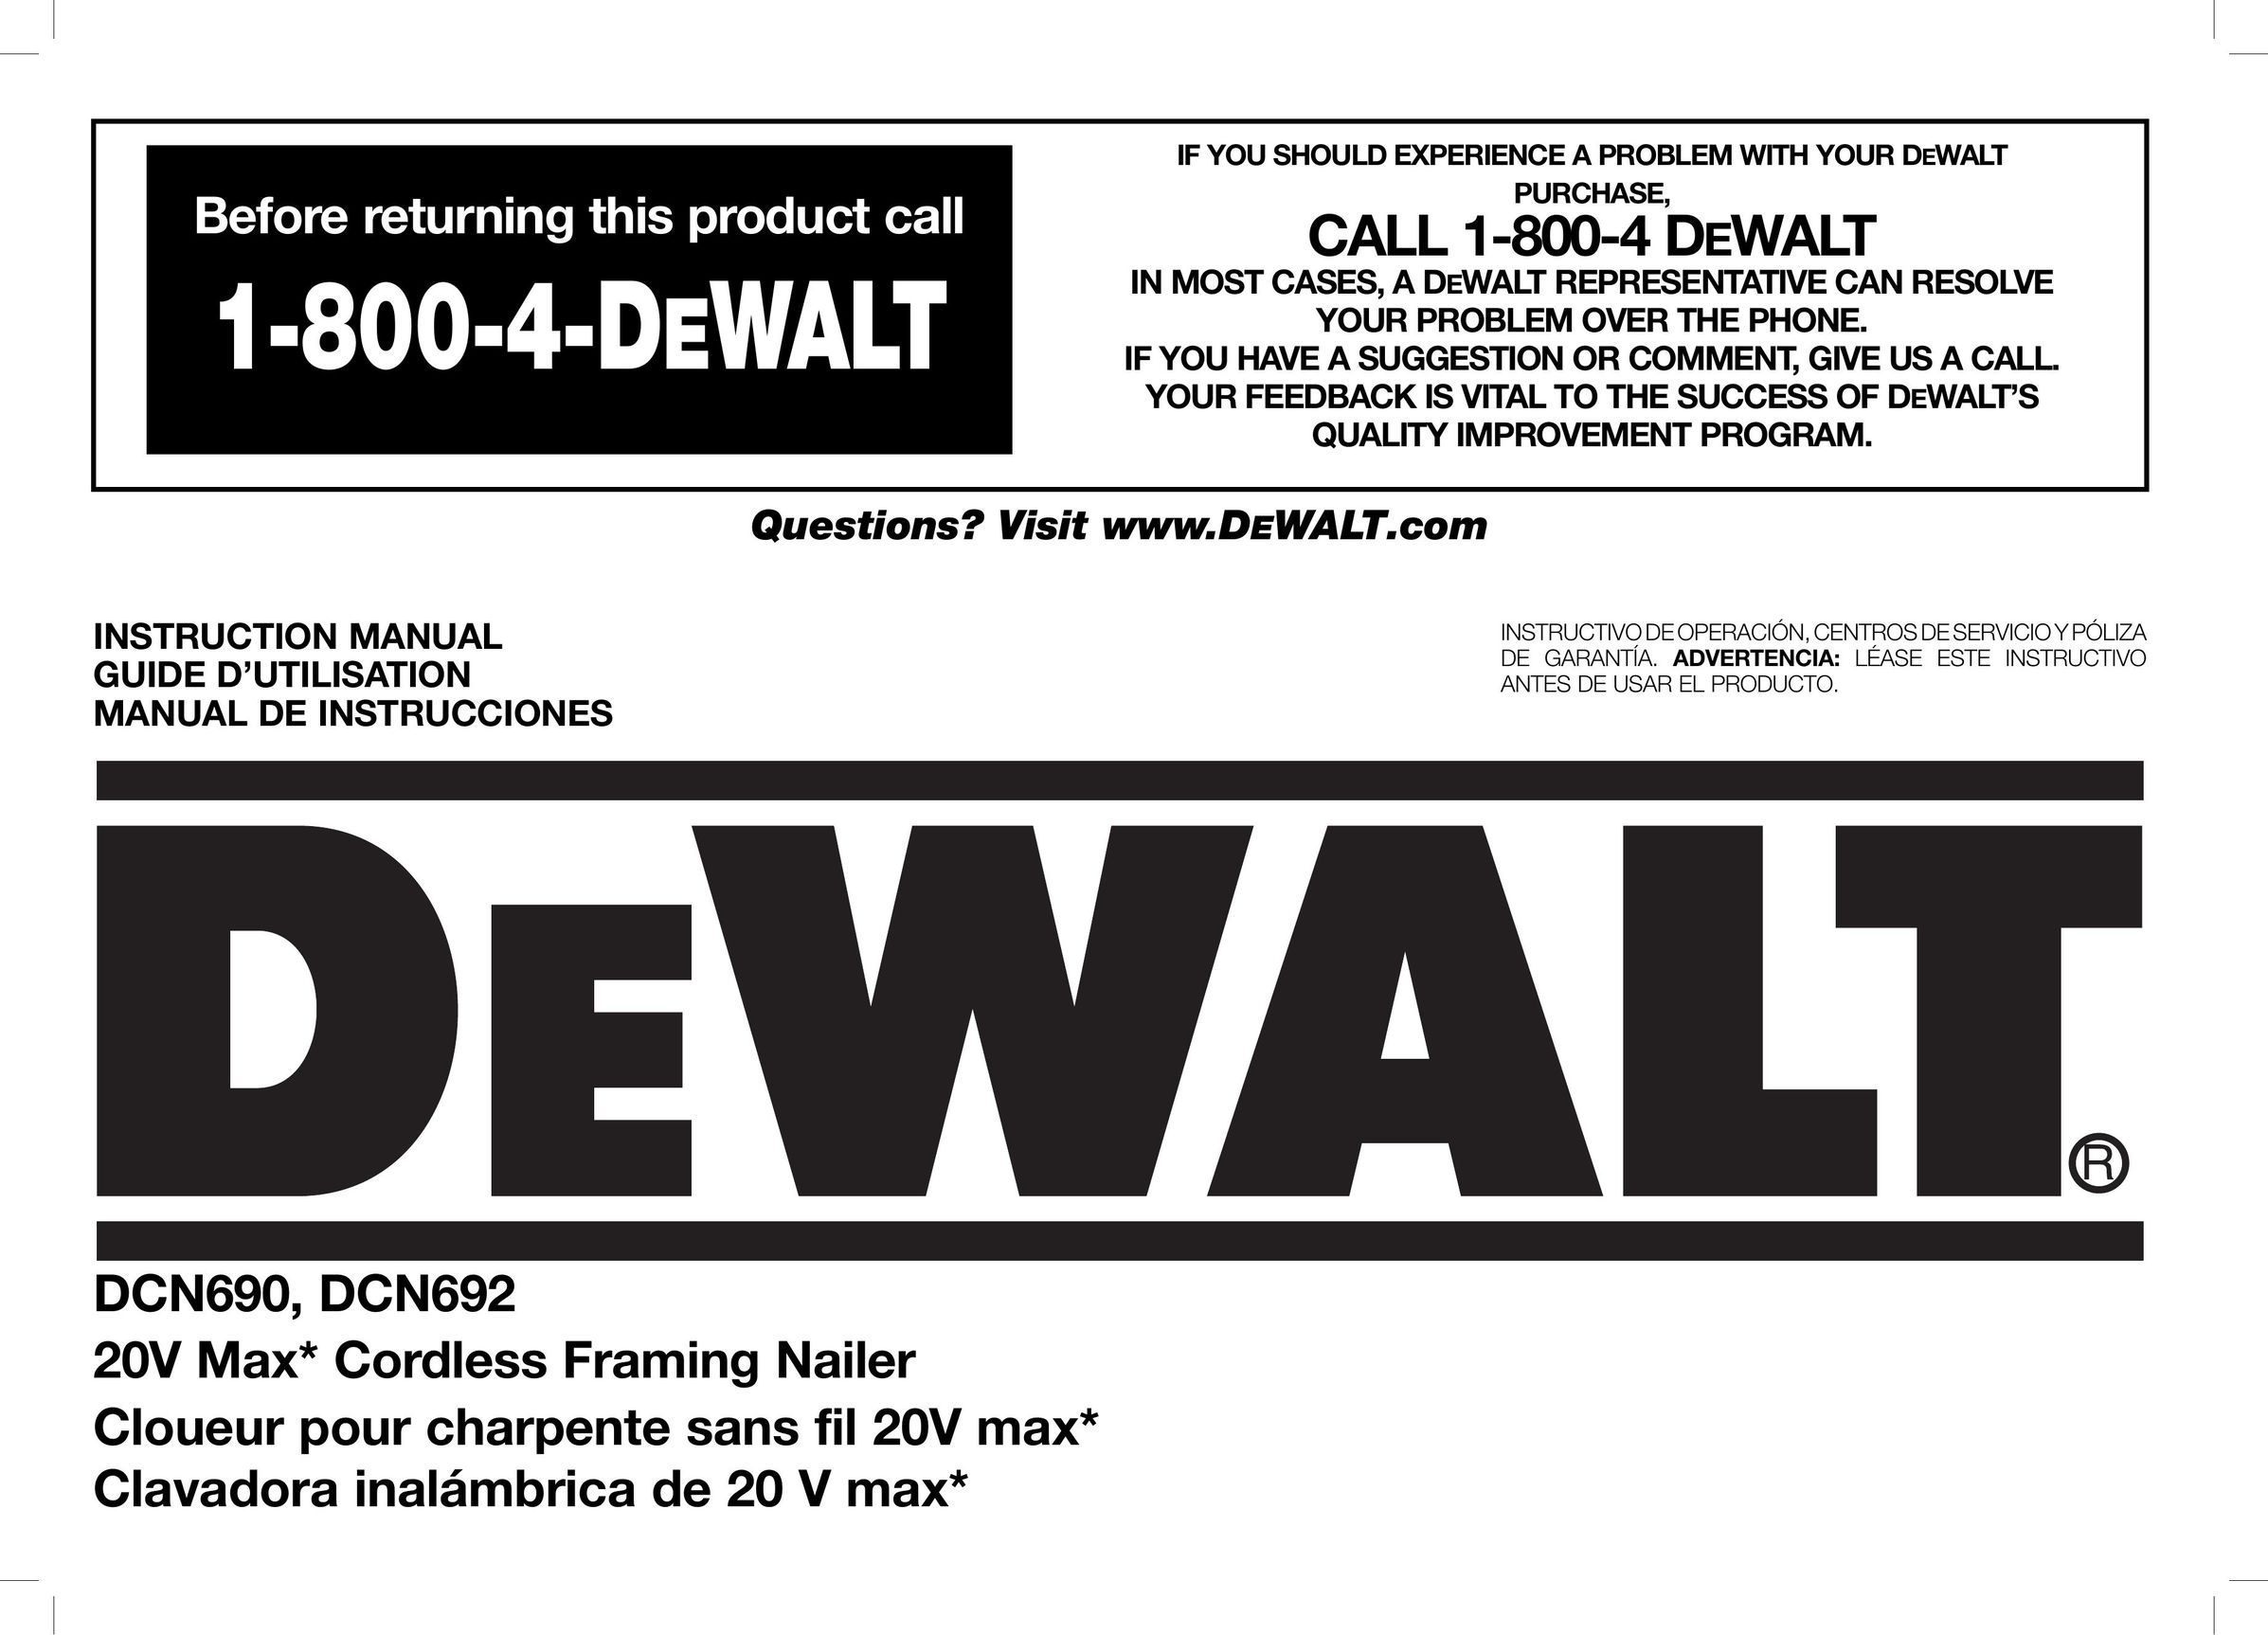 DeWalt DCN692 Nail Gun User Manual